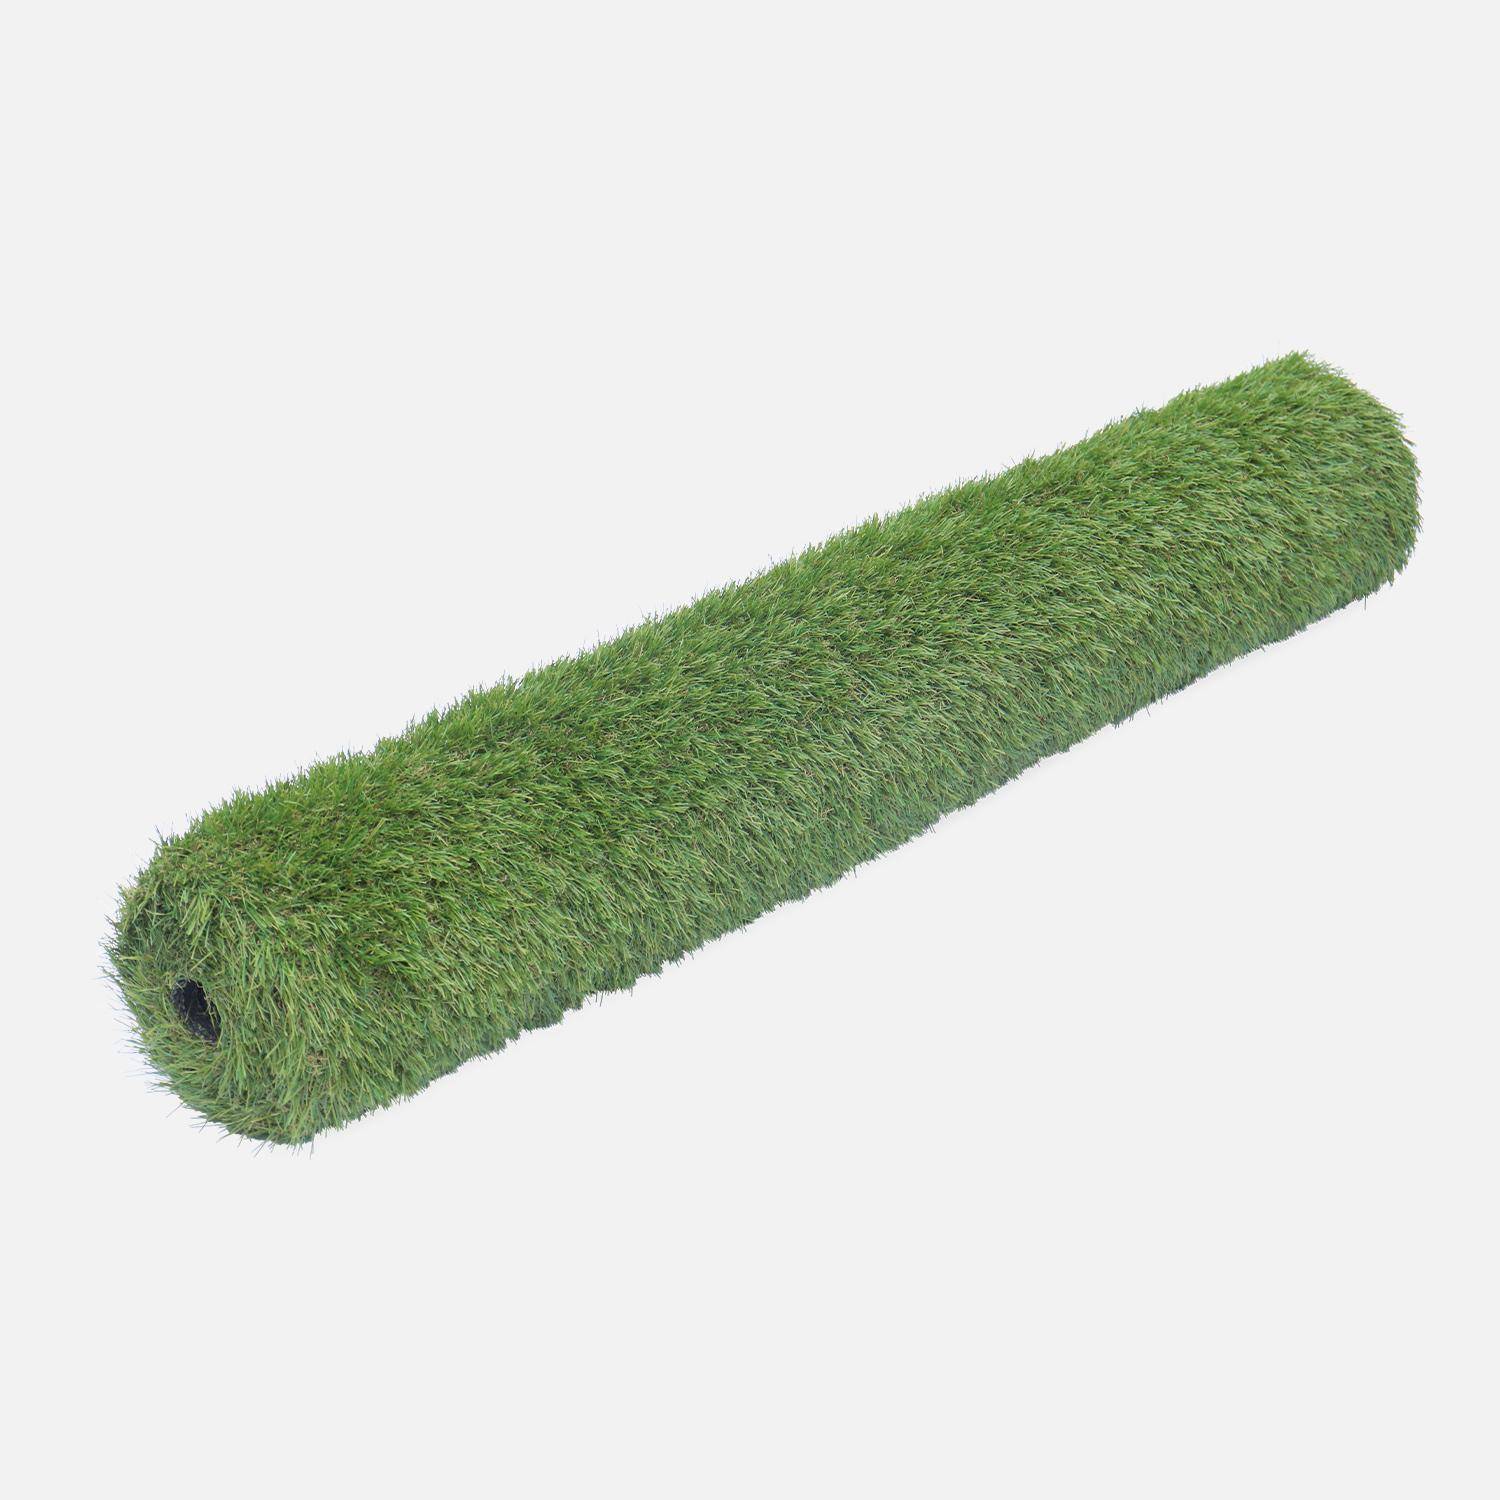 Synthetisch gras 2x5m, dragen, smaragdgroen, kaki groen en beige, 35mm Photo2